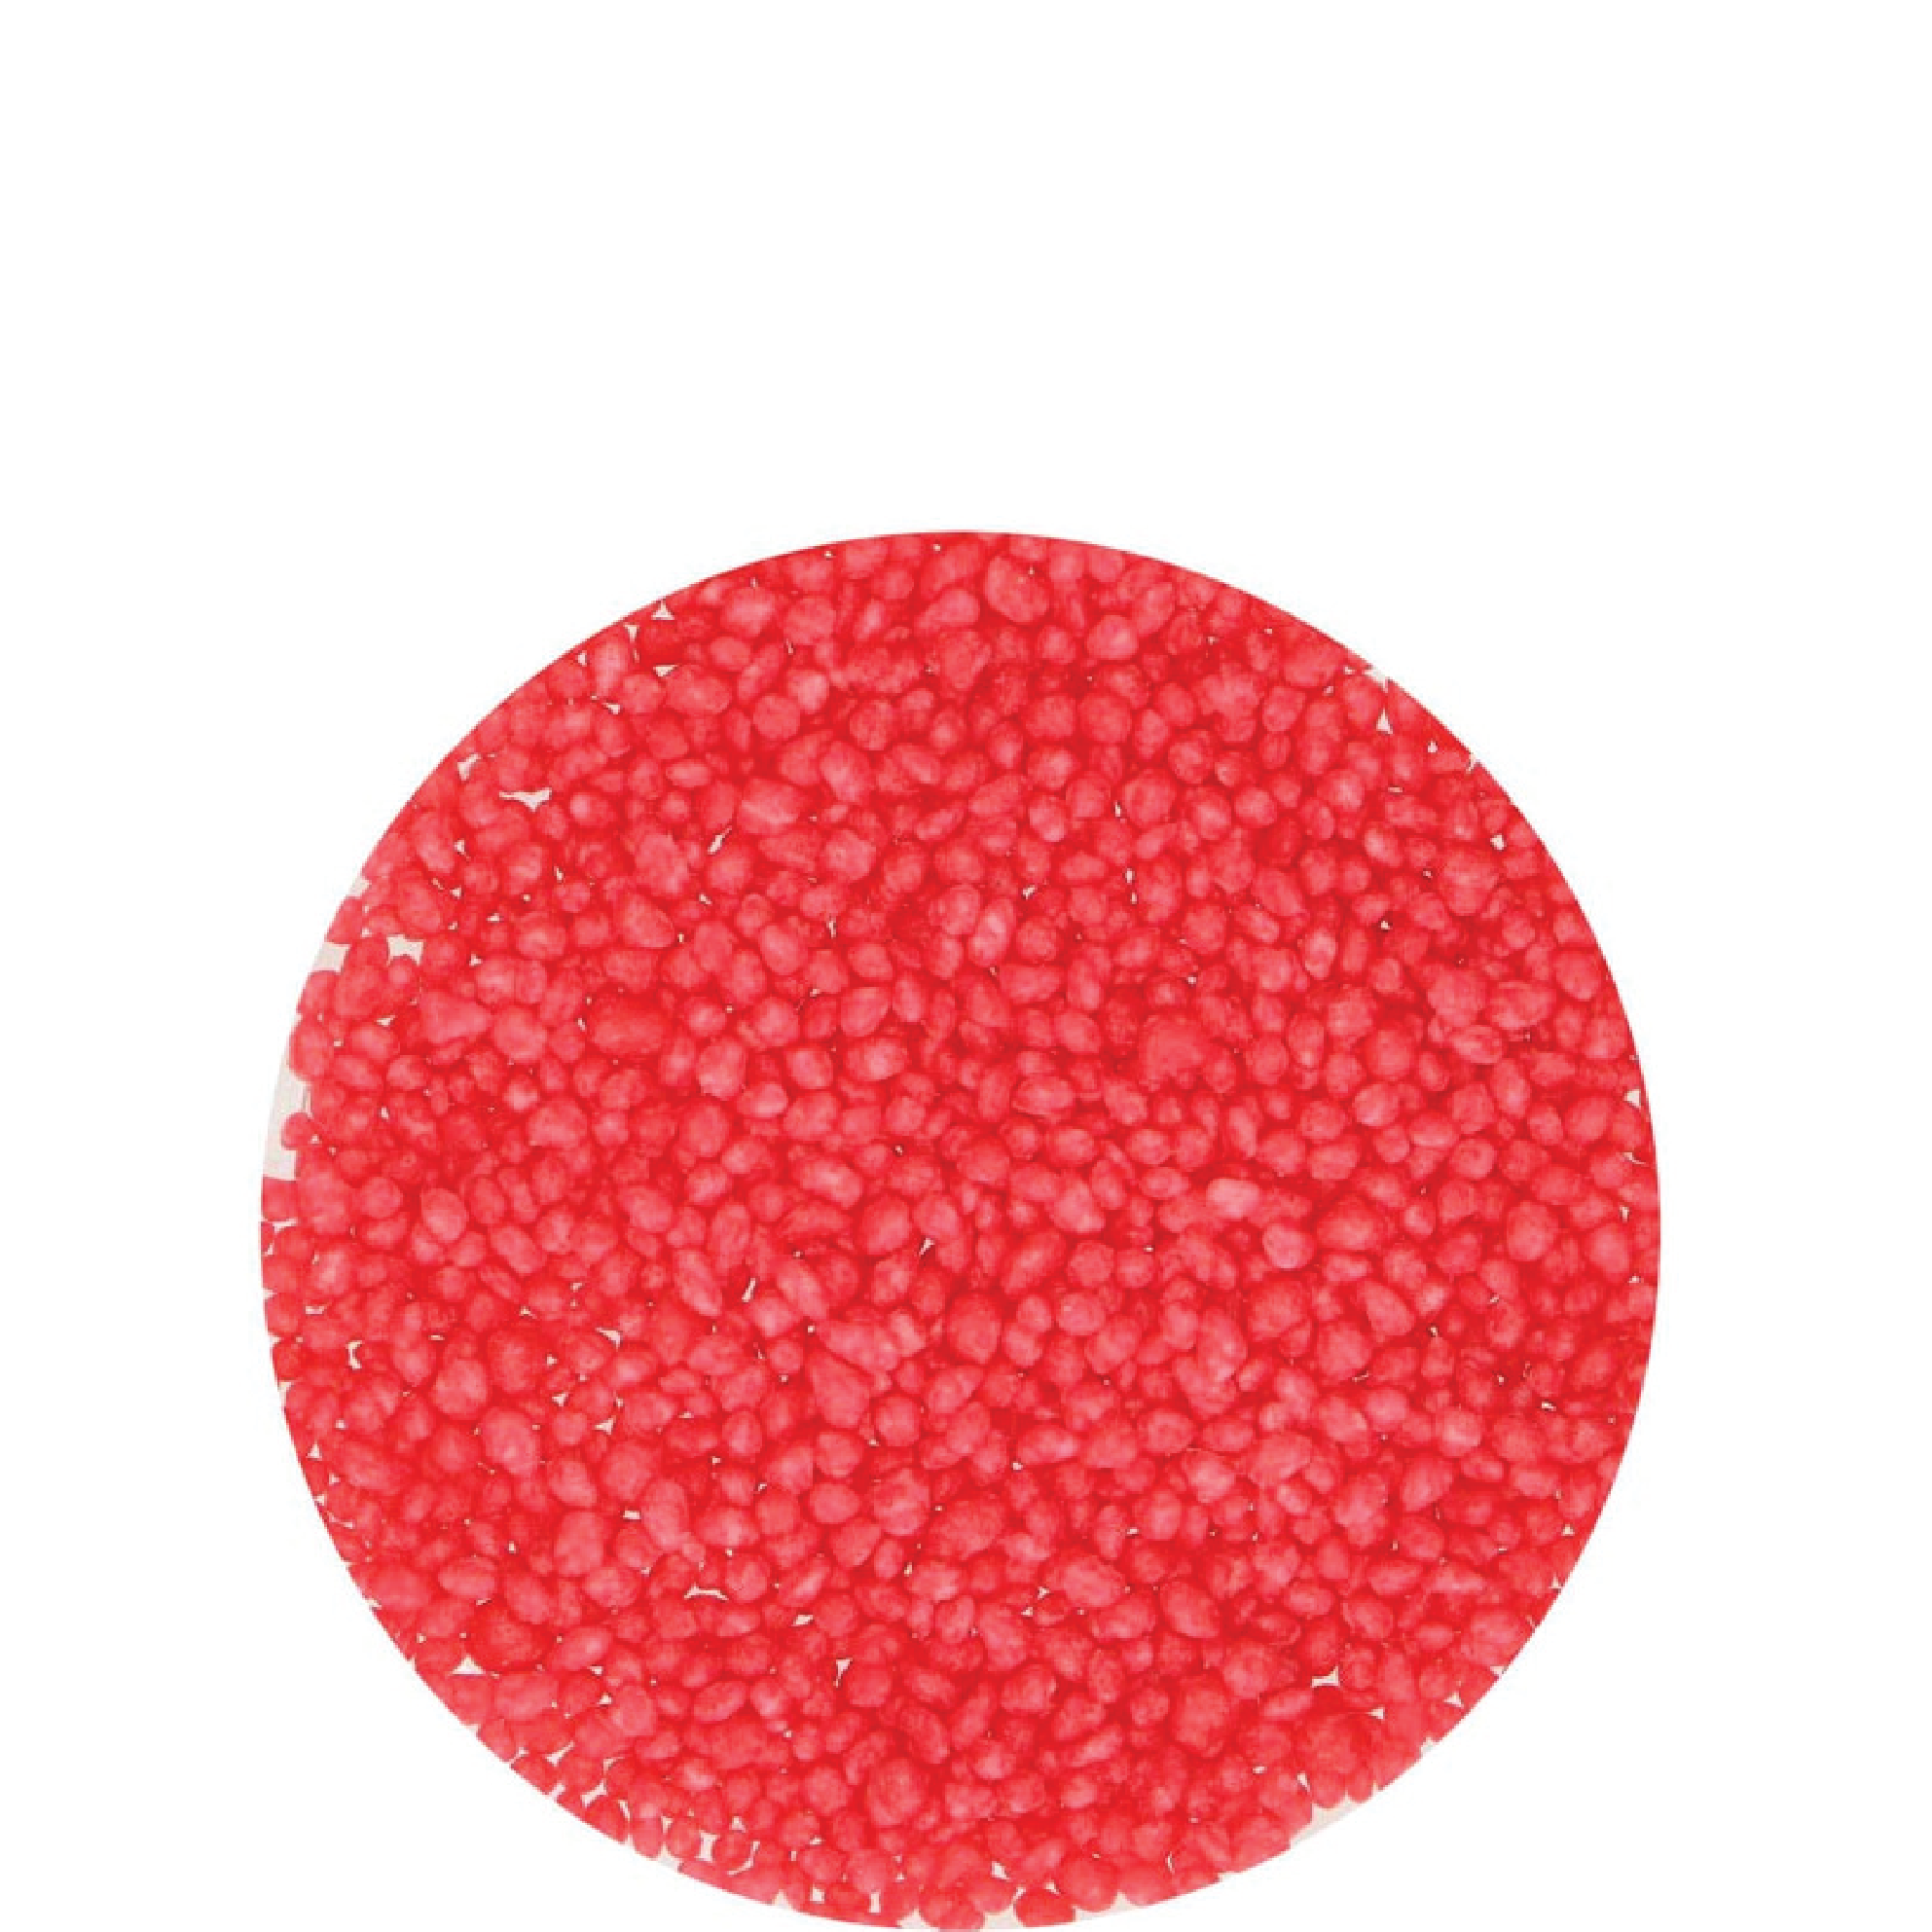 FunCakes Sprinkles Sugar Dots Red 80g